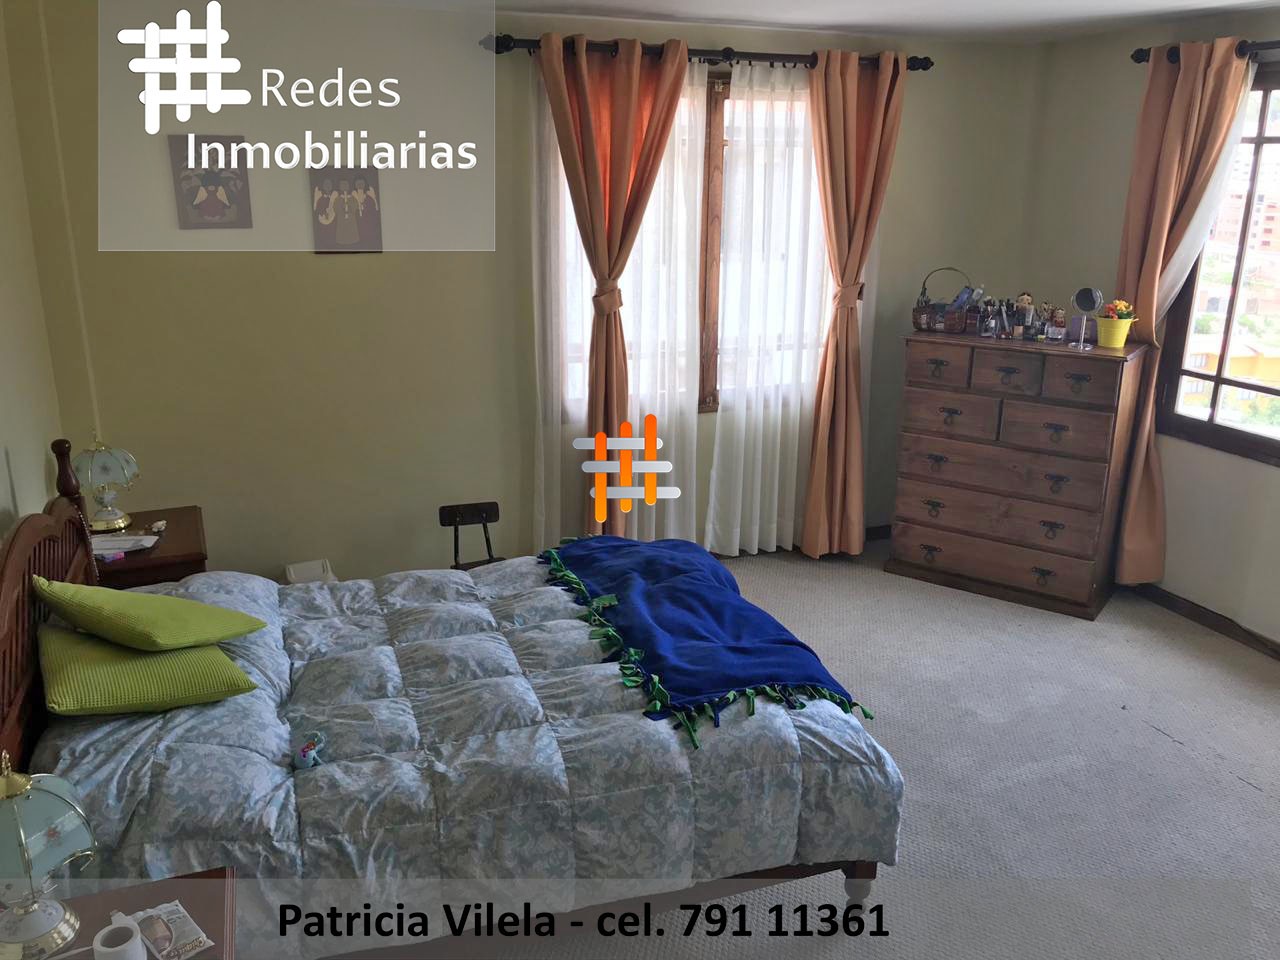 Casa en Achumani en La Paz 3 dormitorios 5 baños 2 parqueos Foto 9